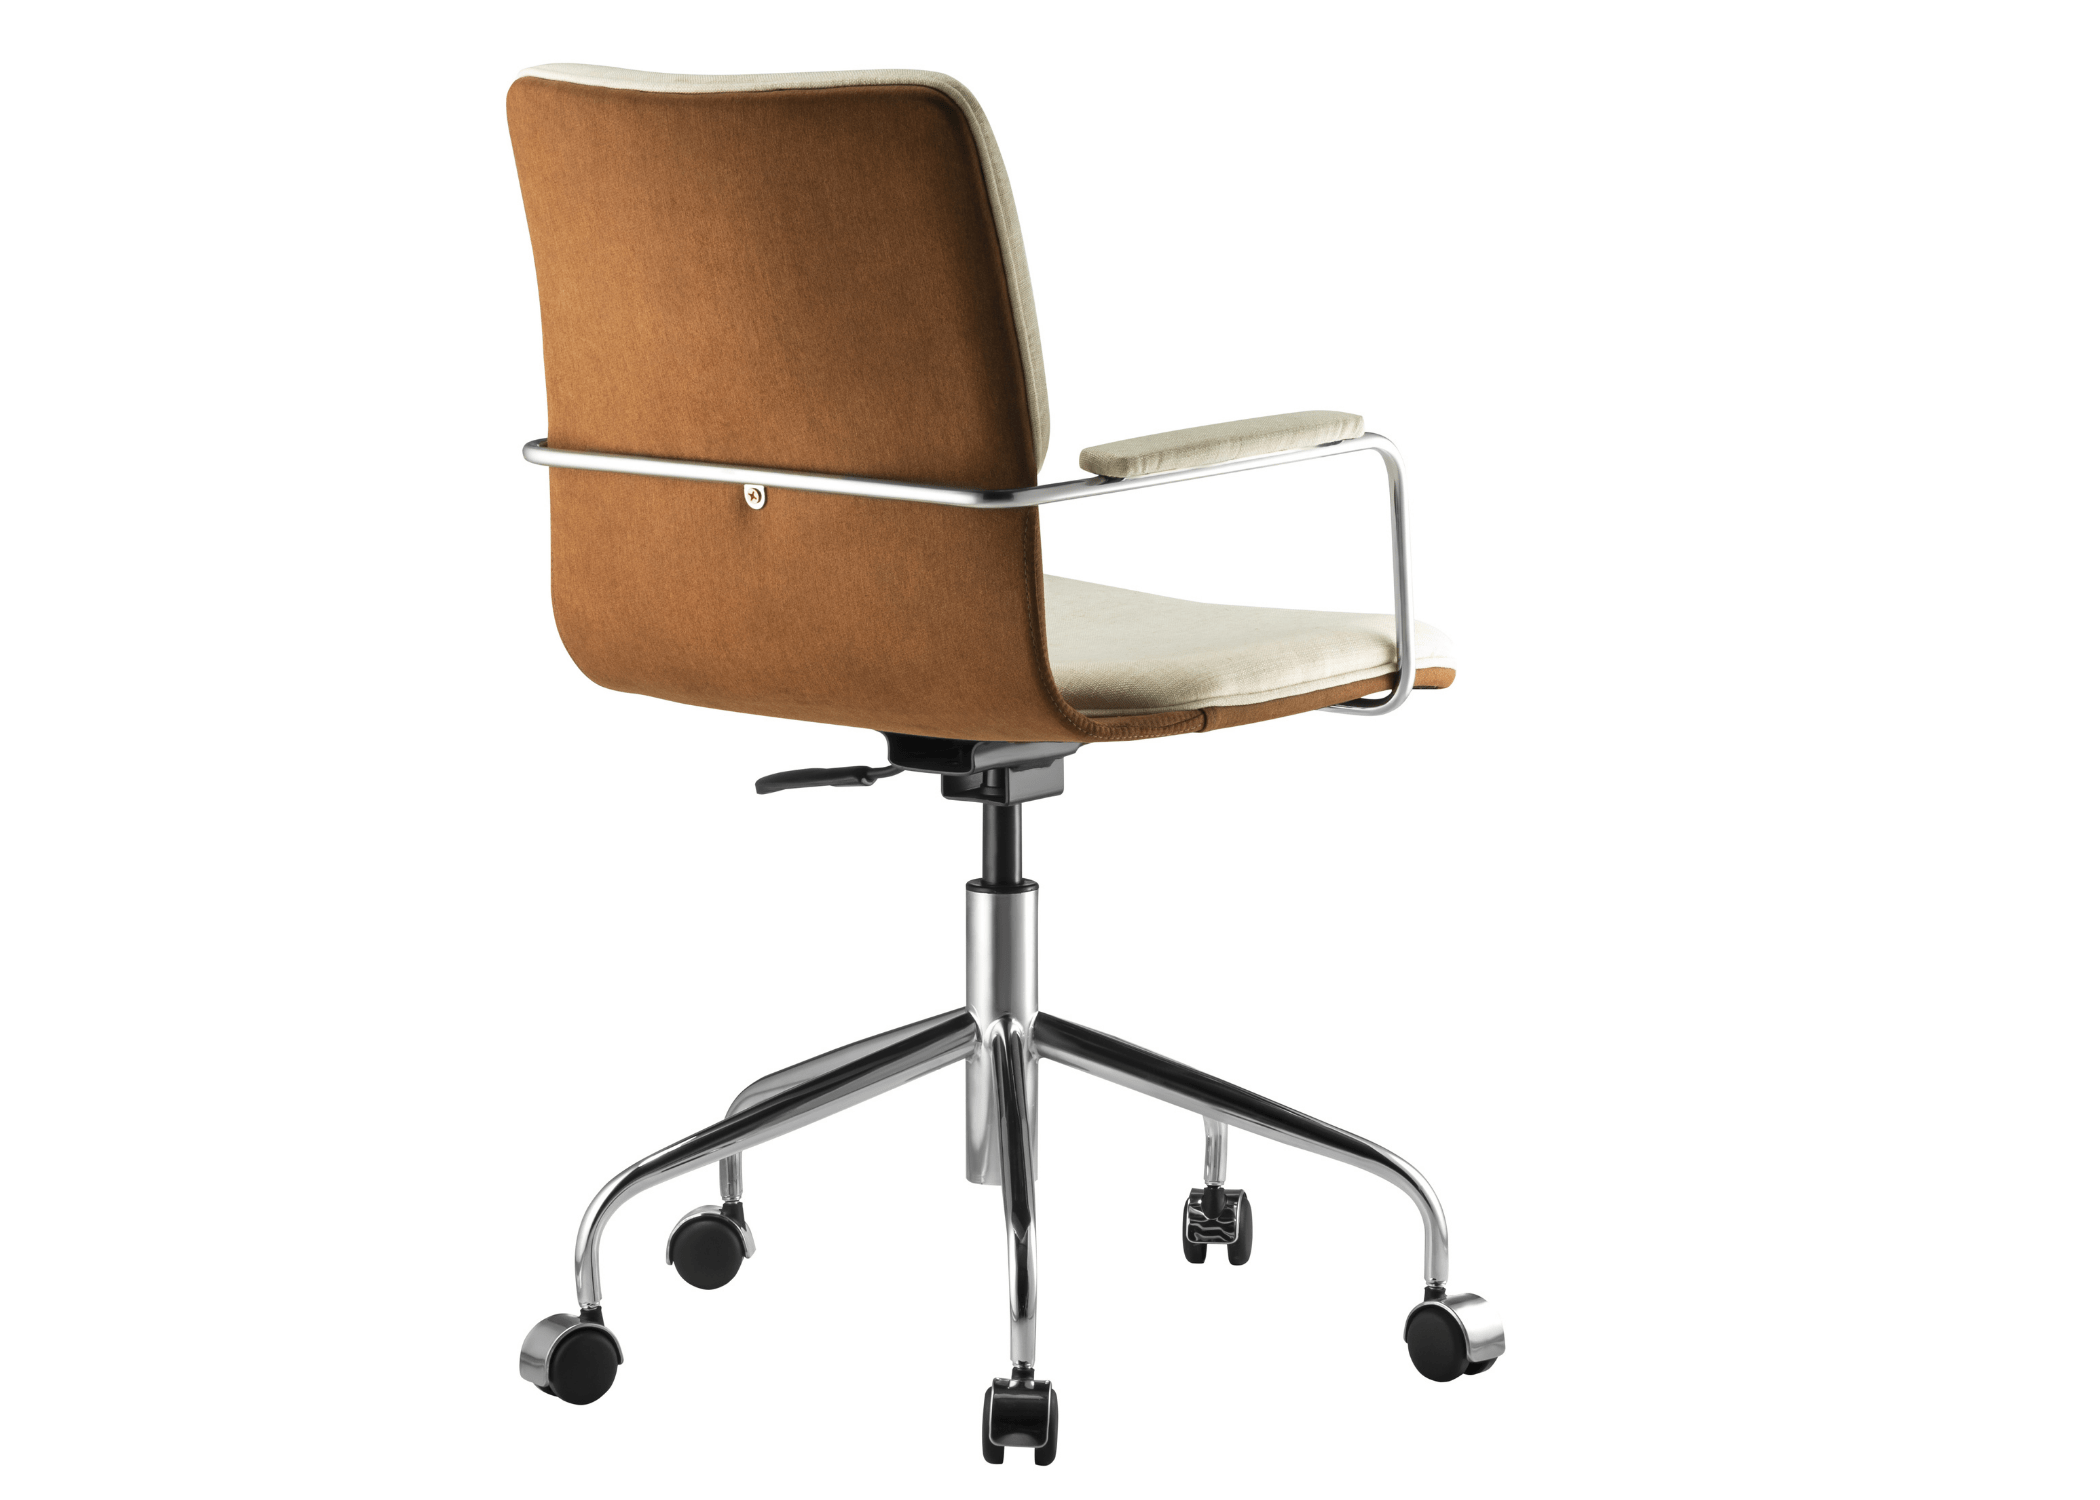 Suporte personalizado: Cadeira Malta oferece ajuste ergonômico para uma postura ideal.